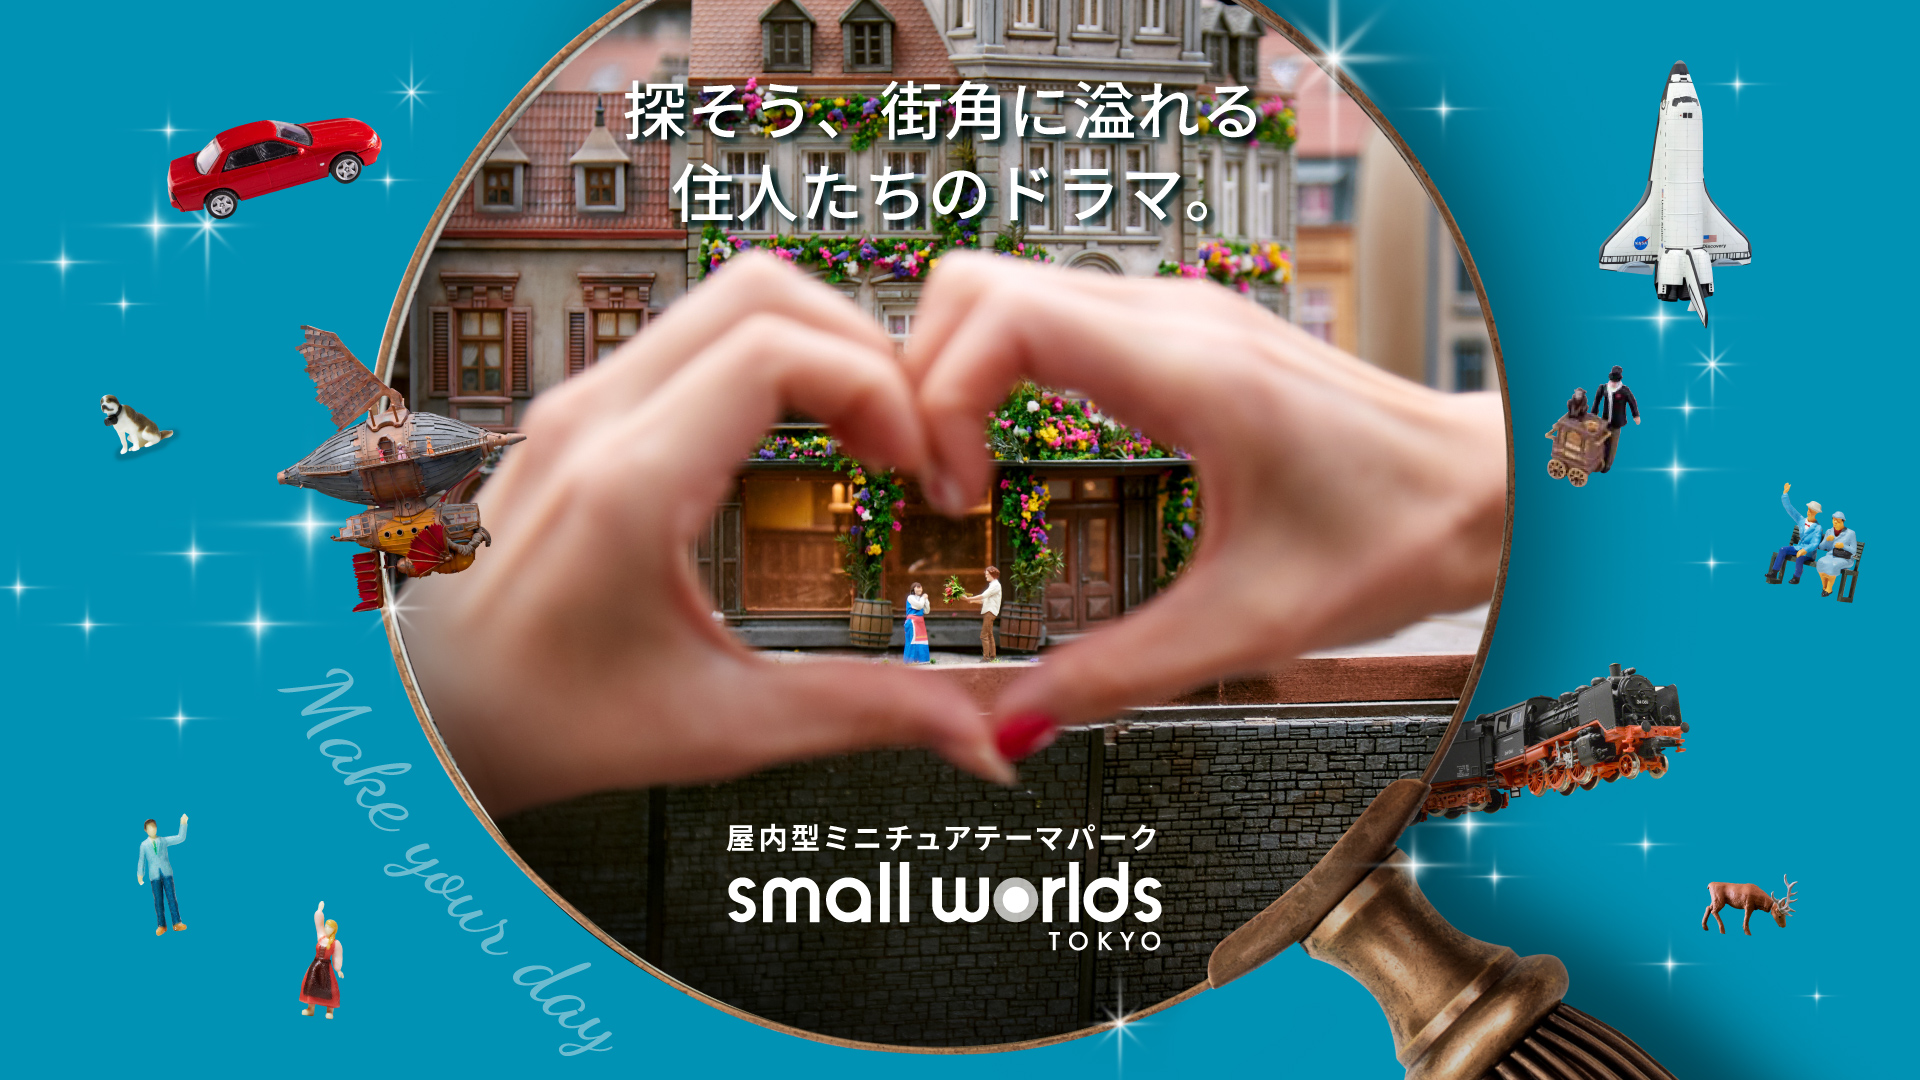 東京 Small Worlds Tokyo 迷你世界博物館門票